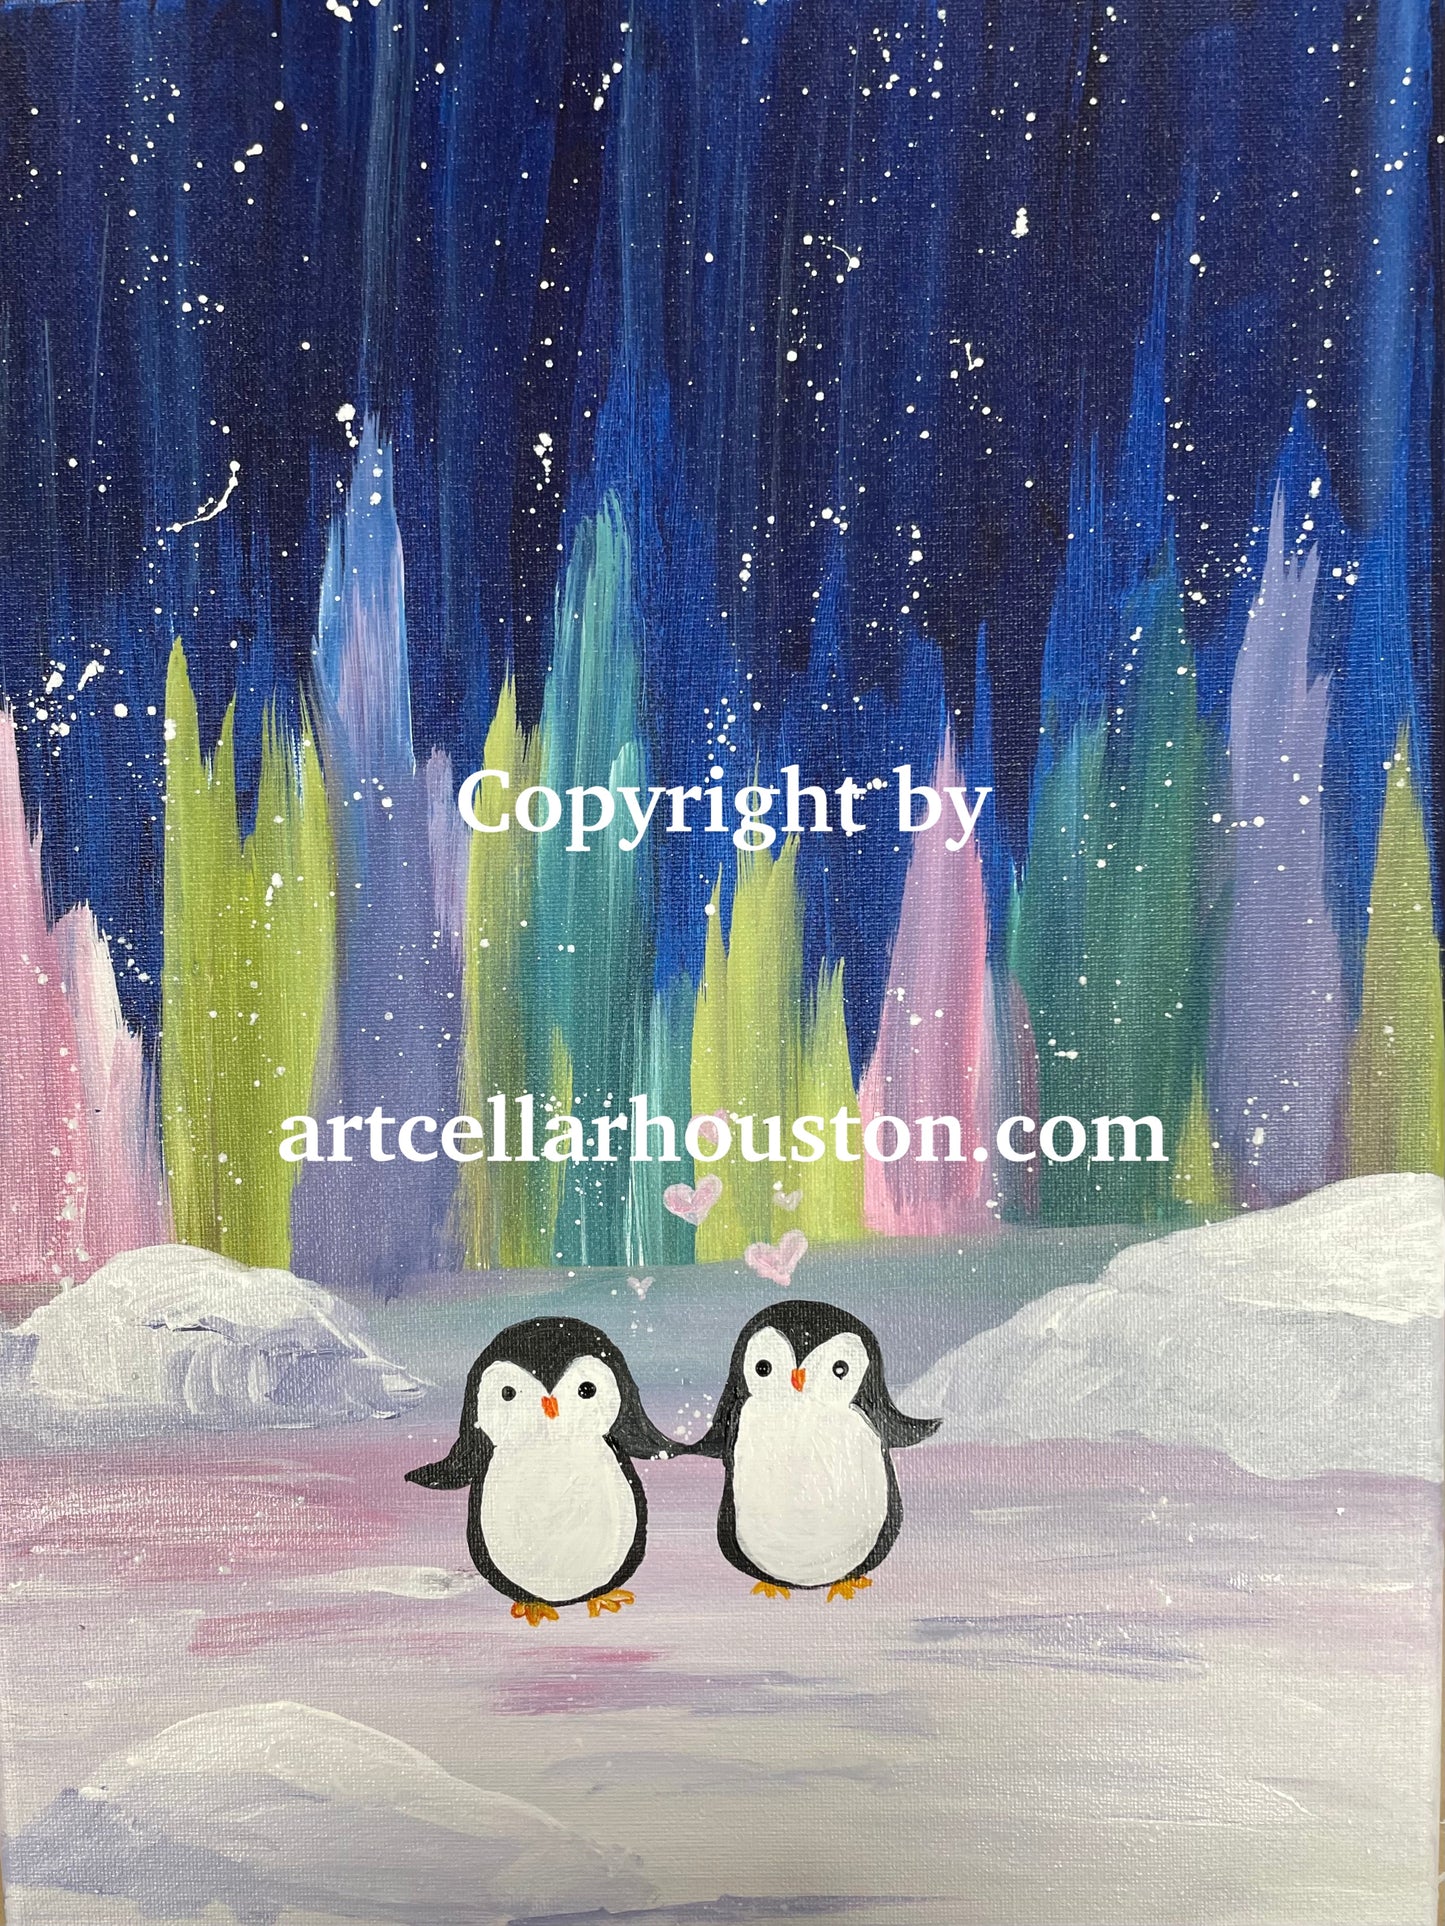 Sat, Dec 3rd, 9-11A “Penguin Love" Public Houston Family Painting Class